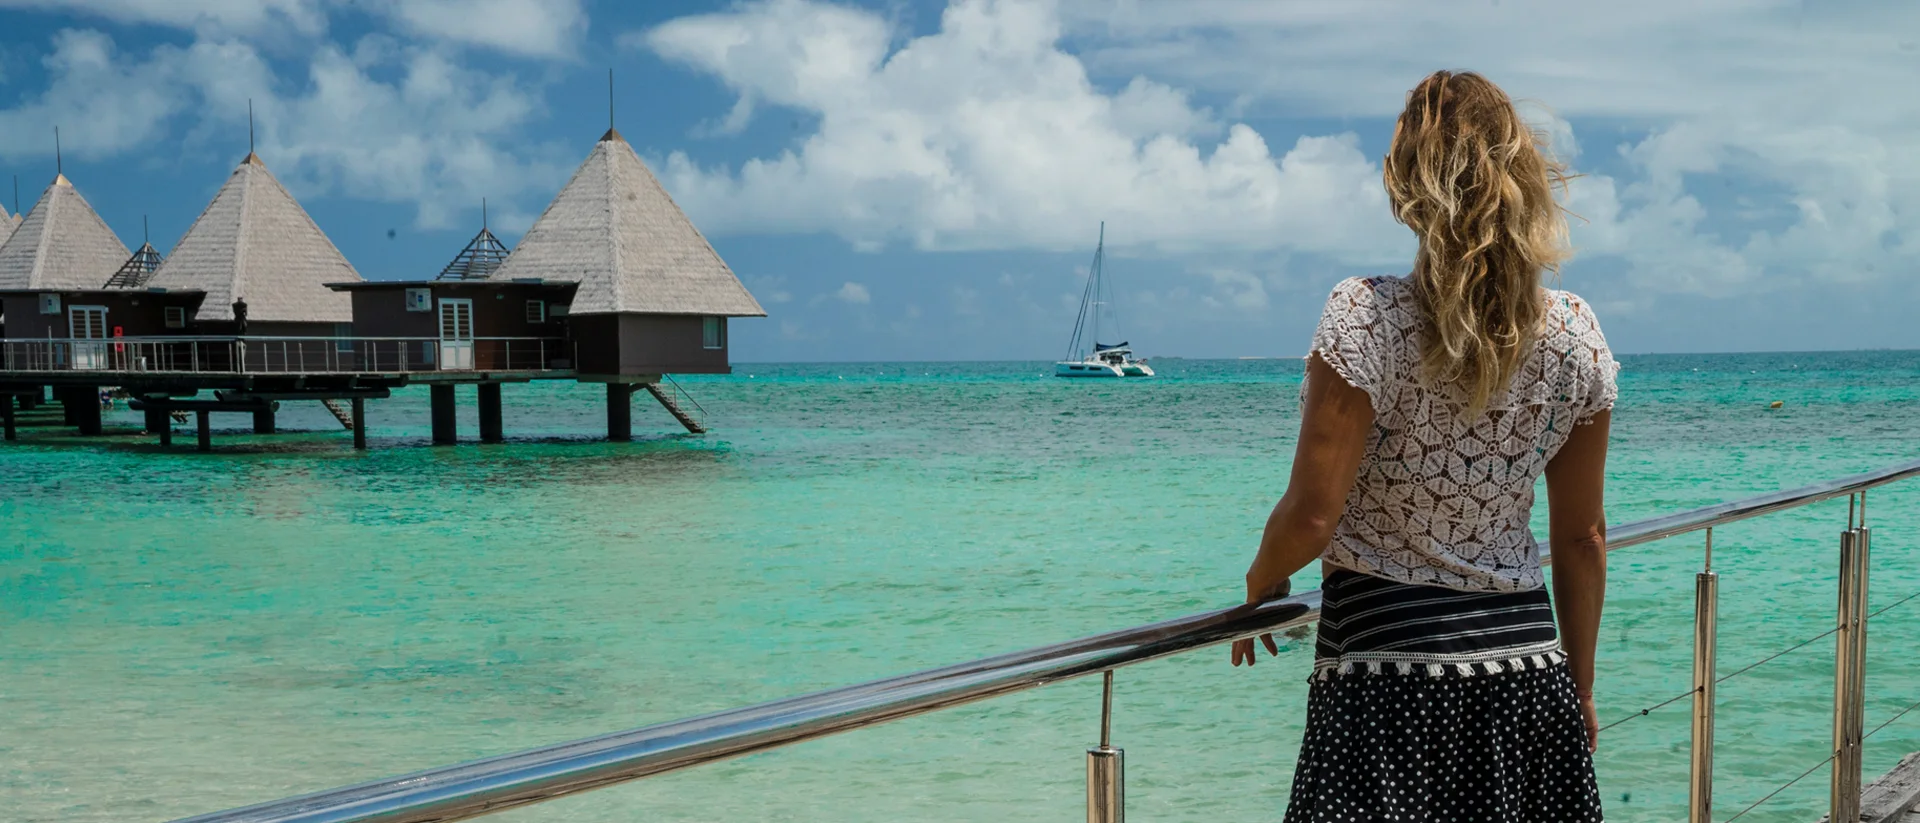 Femme à bord d'un catamaran avec skipper regardant un bungalow sur une plage aux eaux cristallines